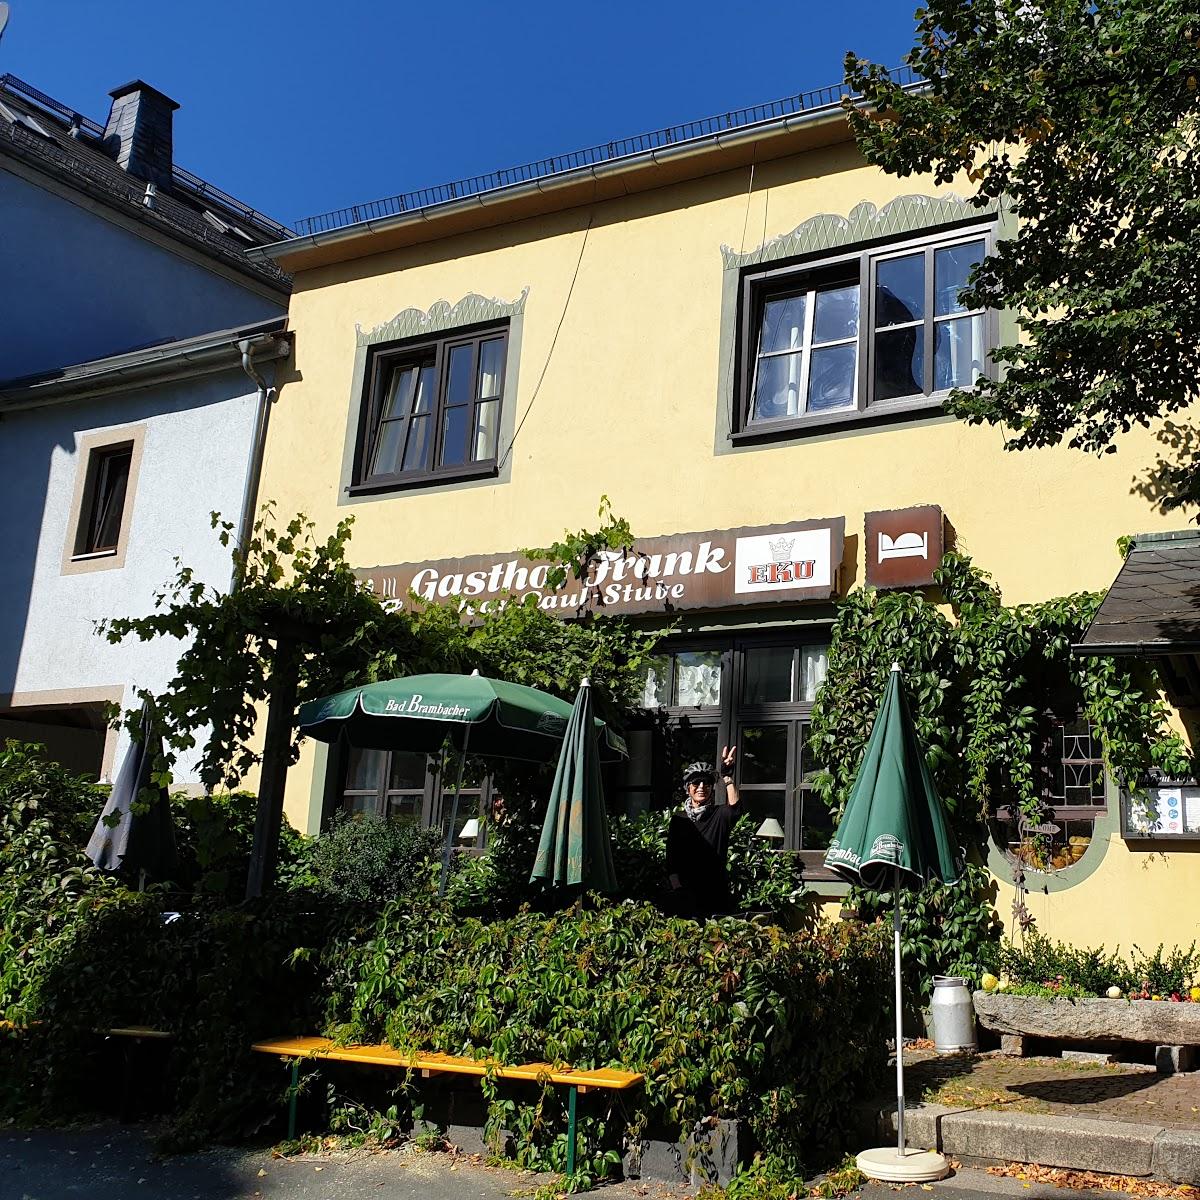 Restaurant "Gasthof Frank" in Köditz